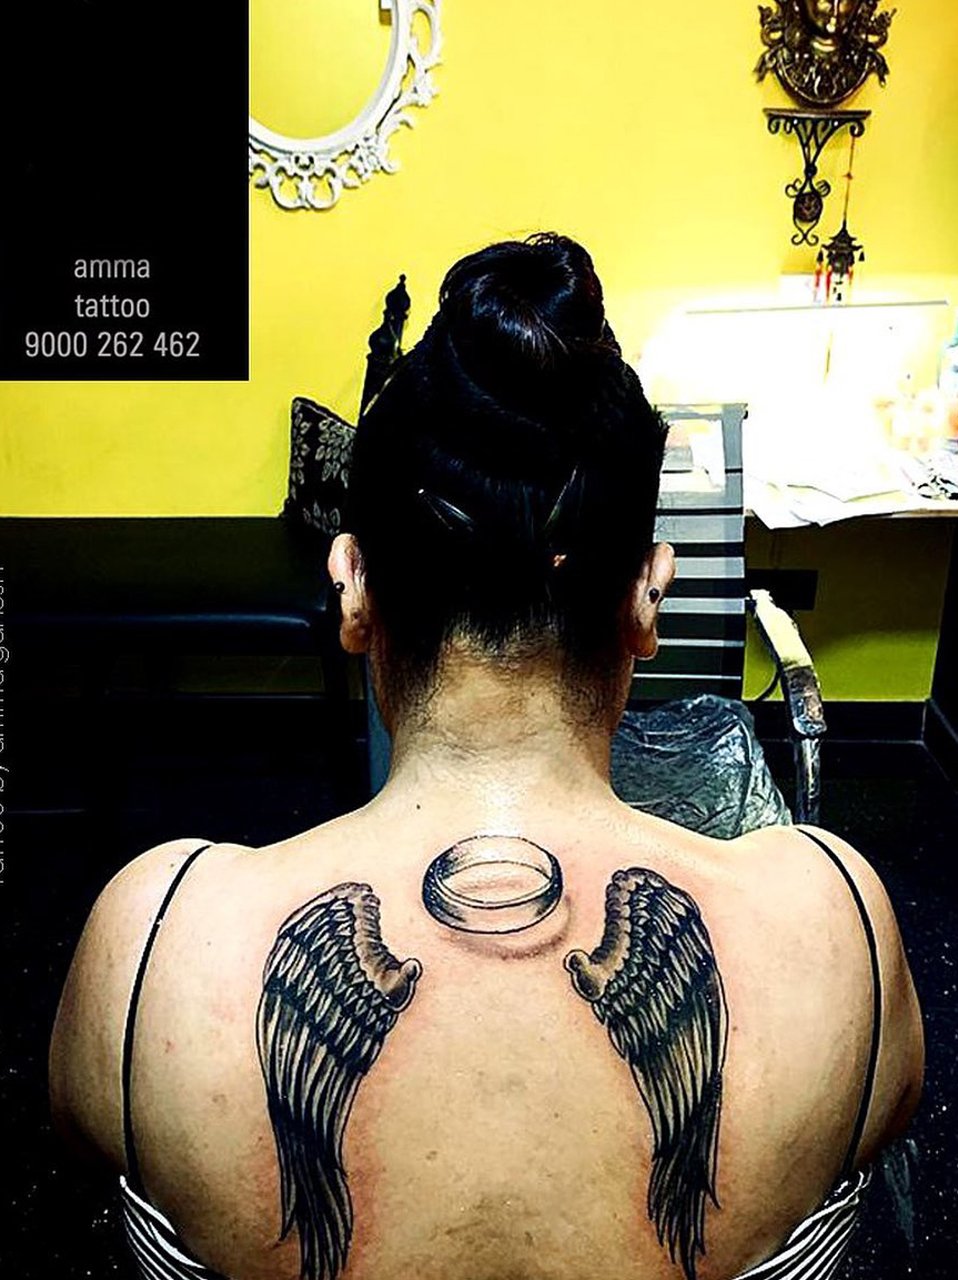 AMMA Tattoo Studio 21 - heart beat tattoo in amma tattoo studio rajahmundry  tattoo by ganesh 9000 262 462 | Facebook